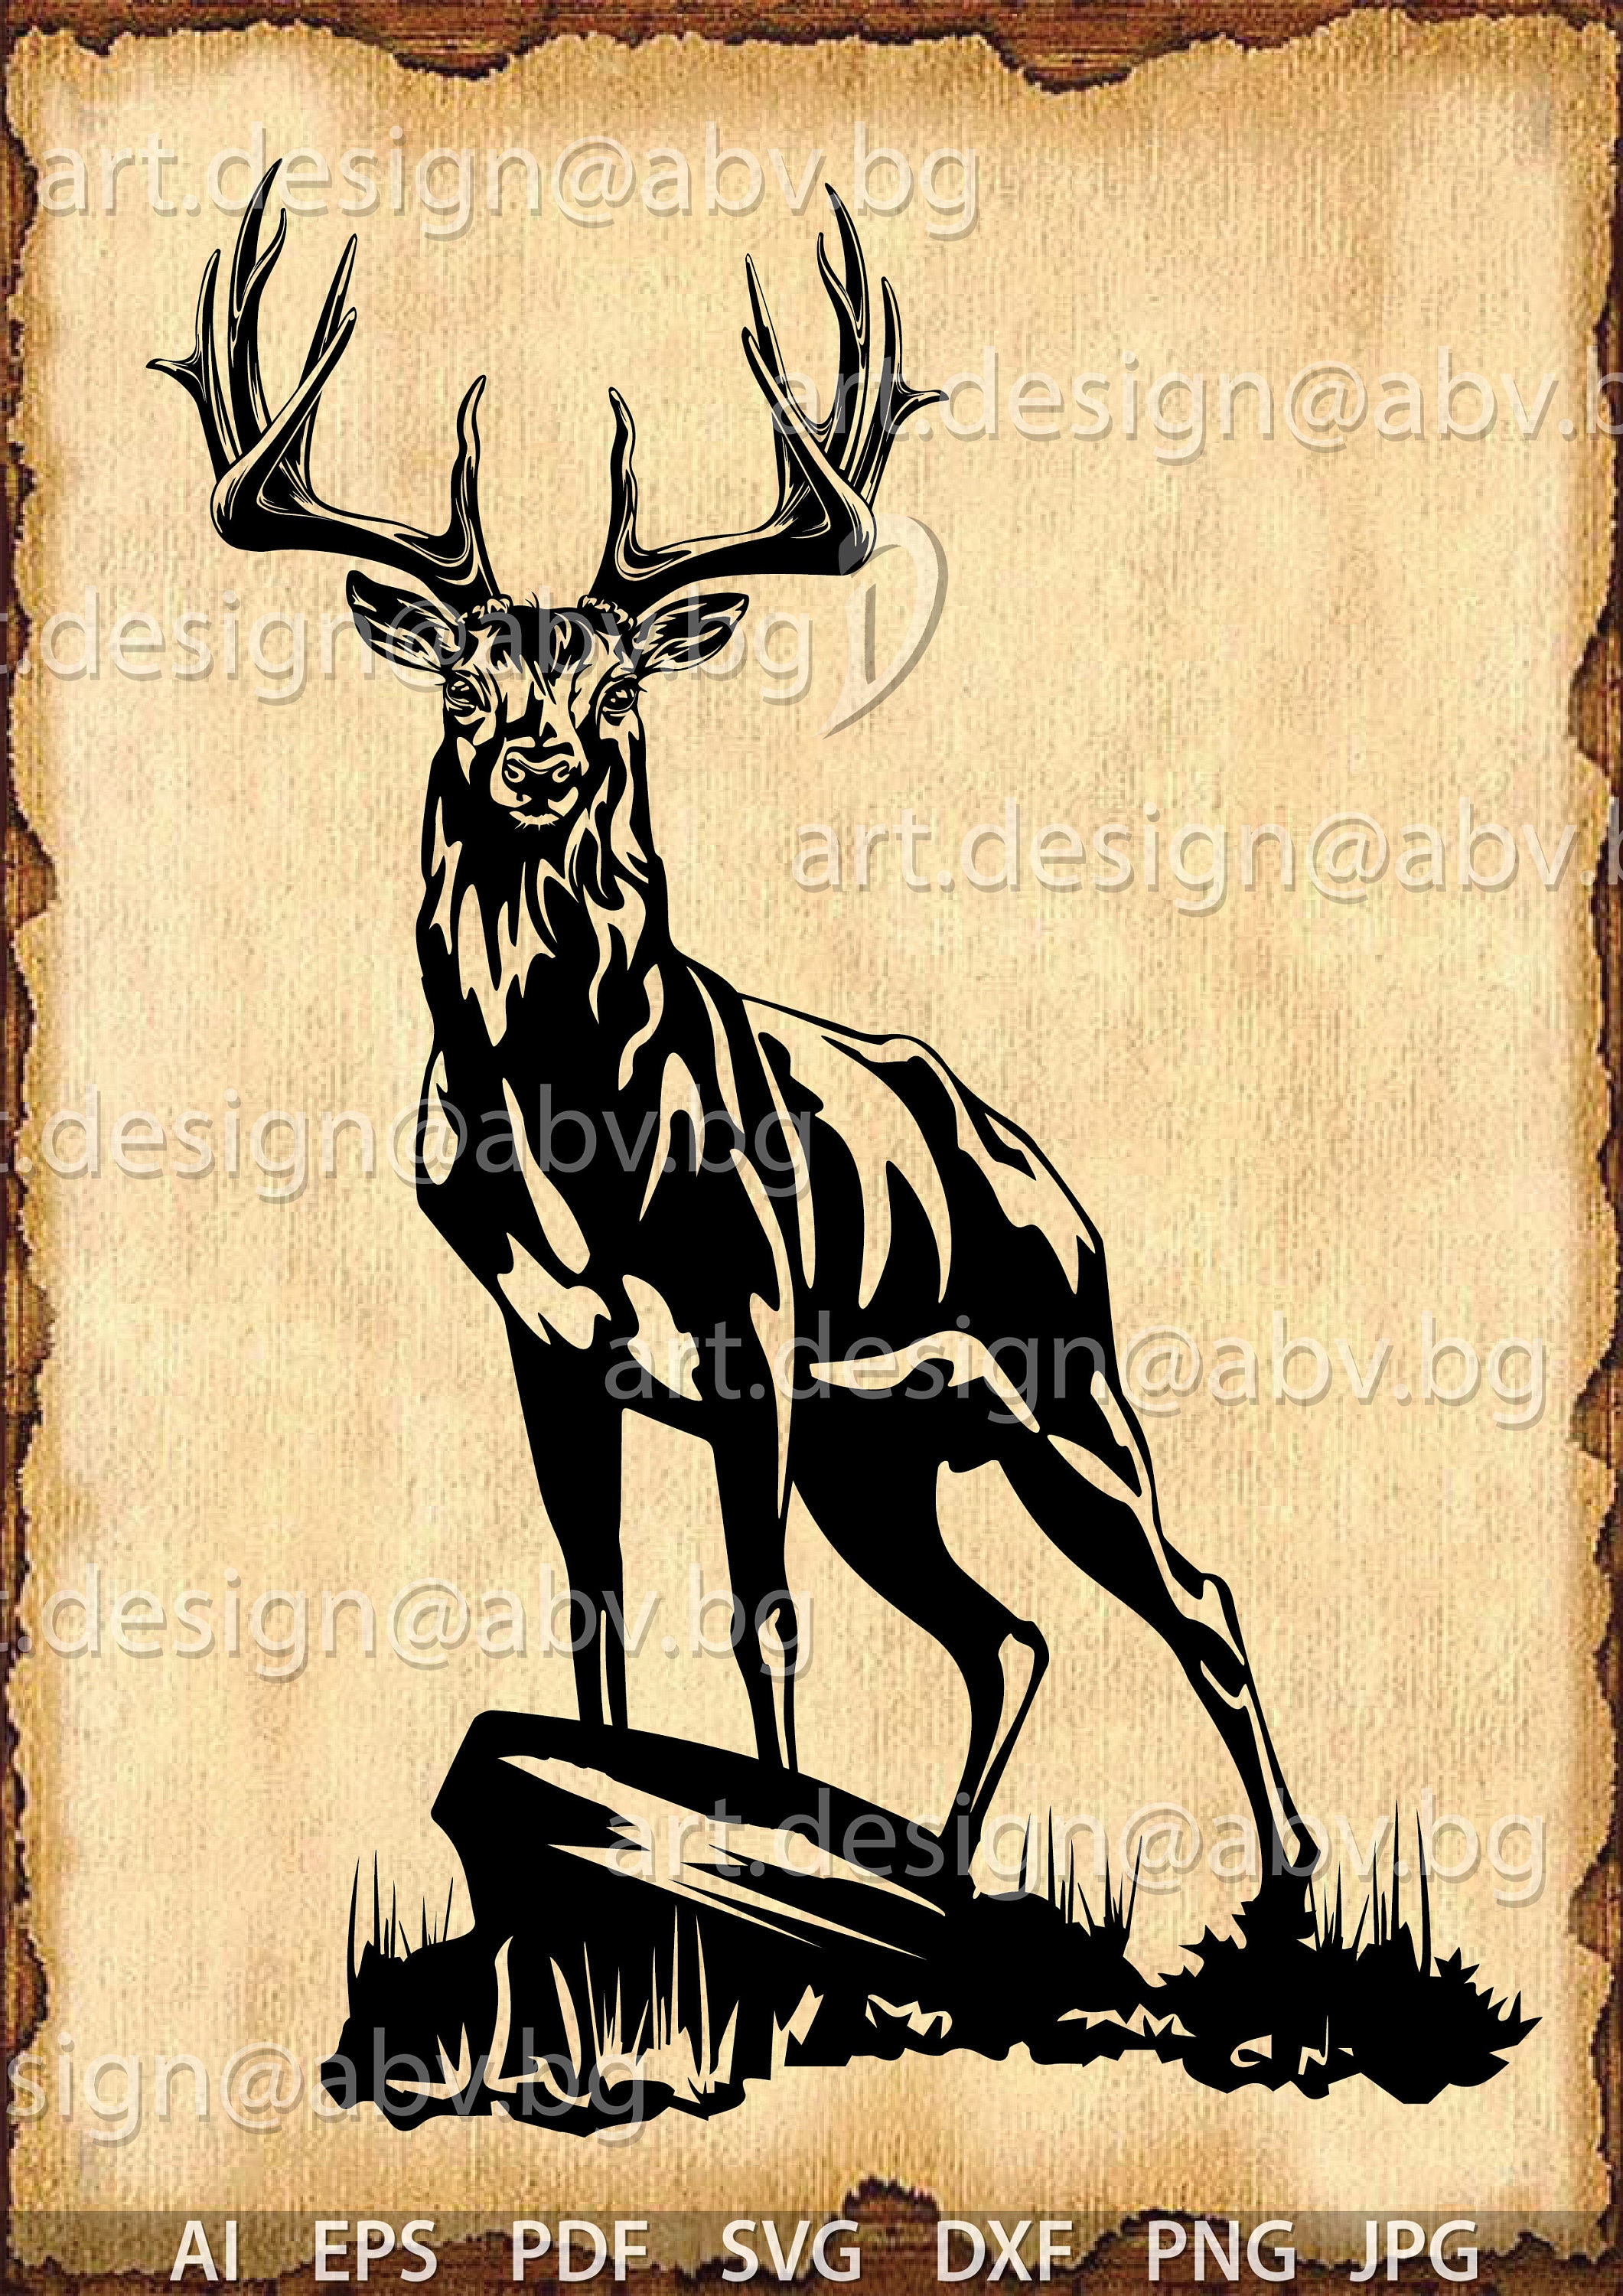 deer hoof prints - Google Search  Deer tracks, Deer decal, Deer track  tattoo